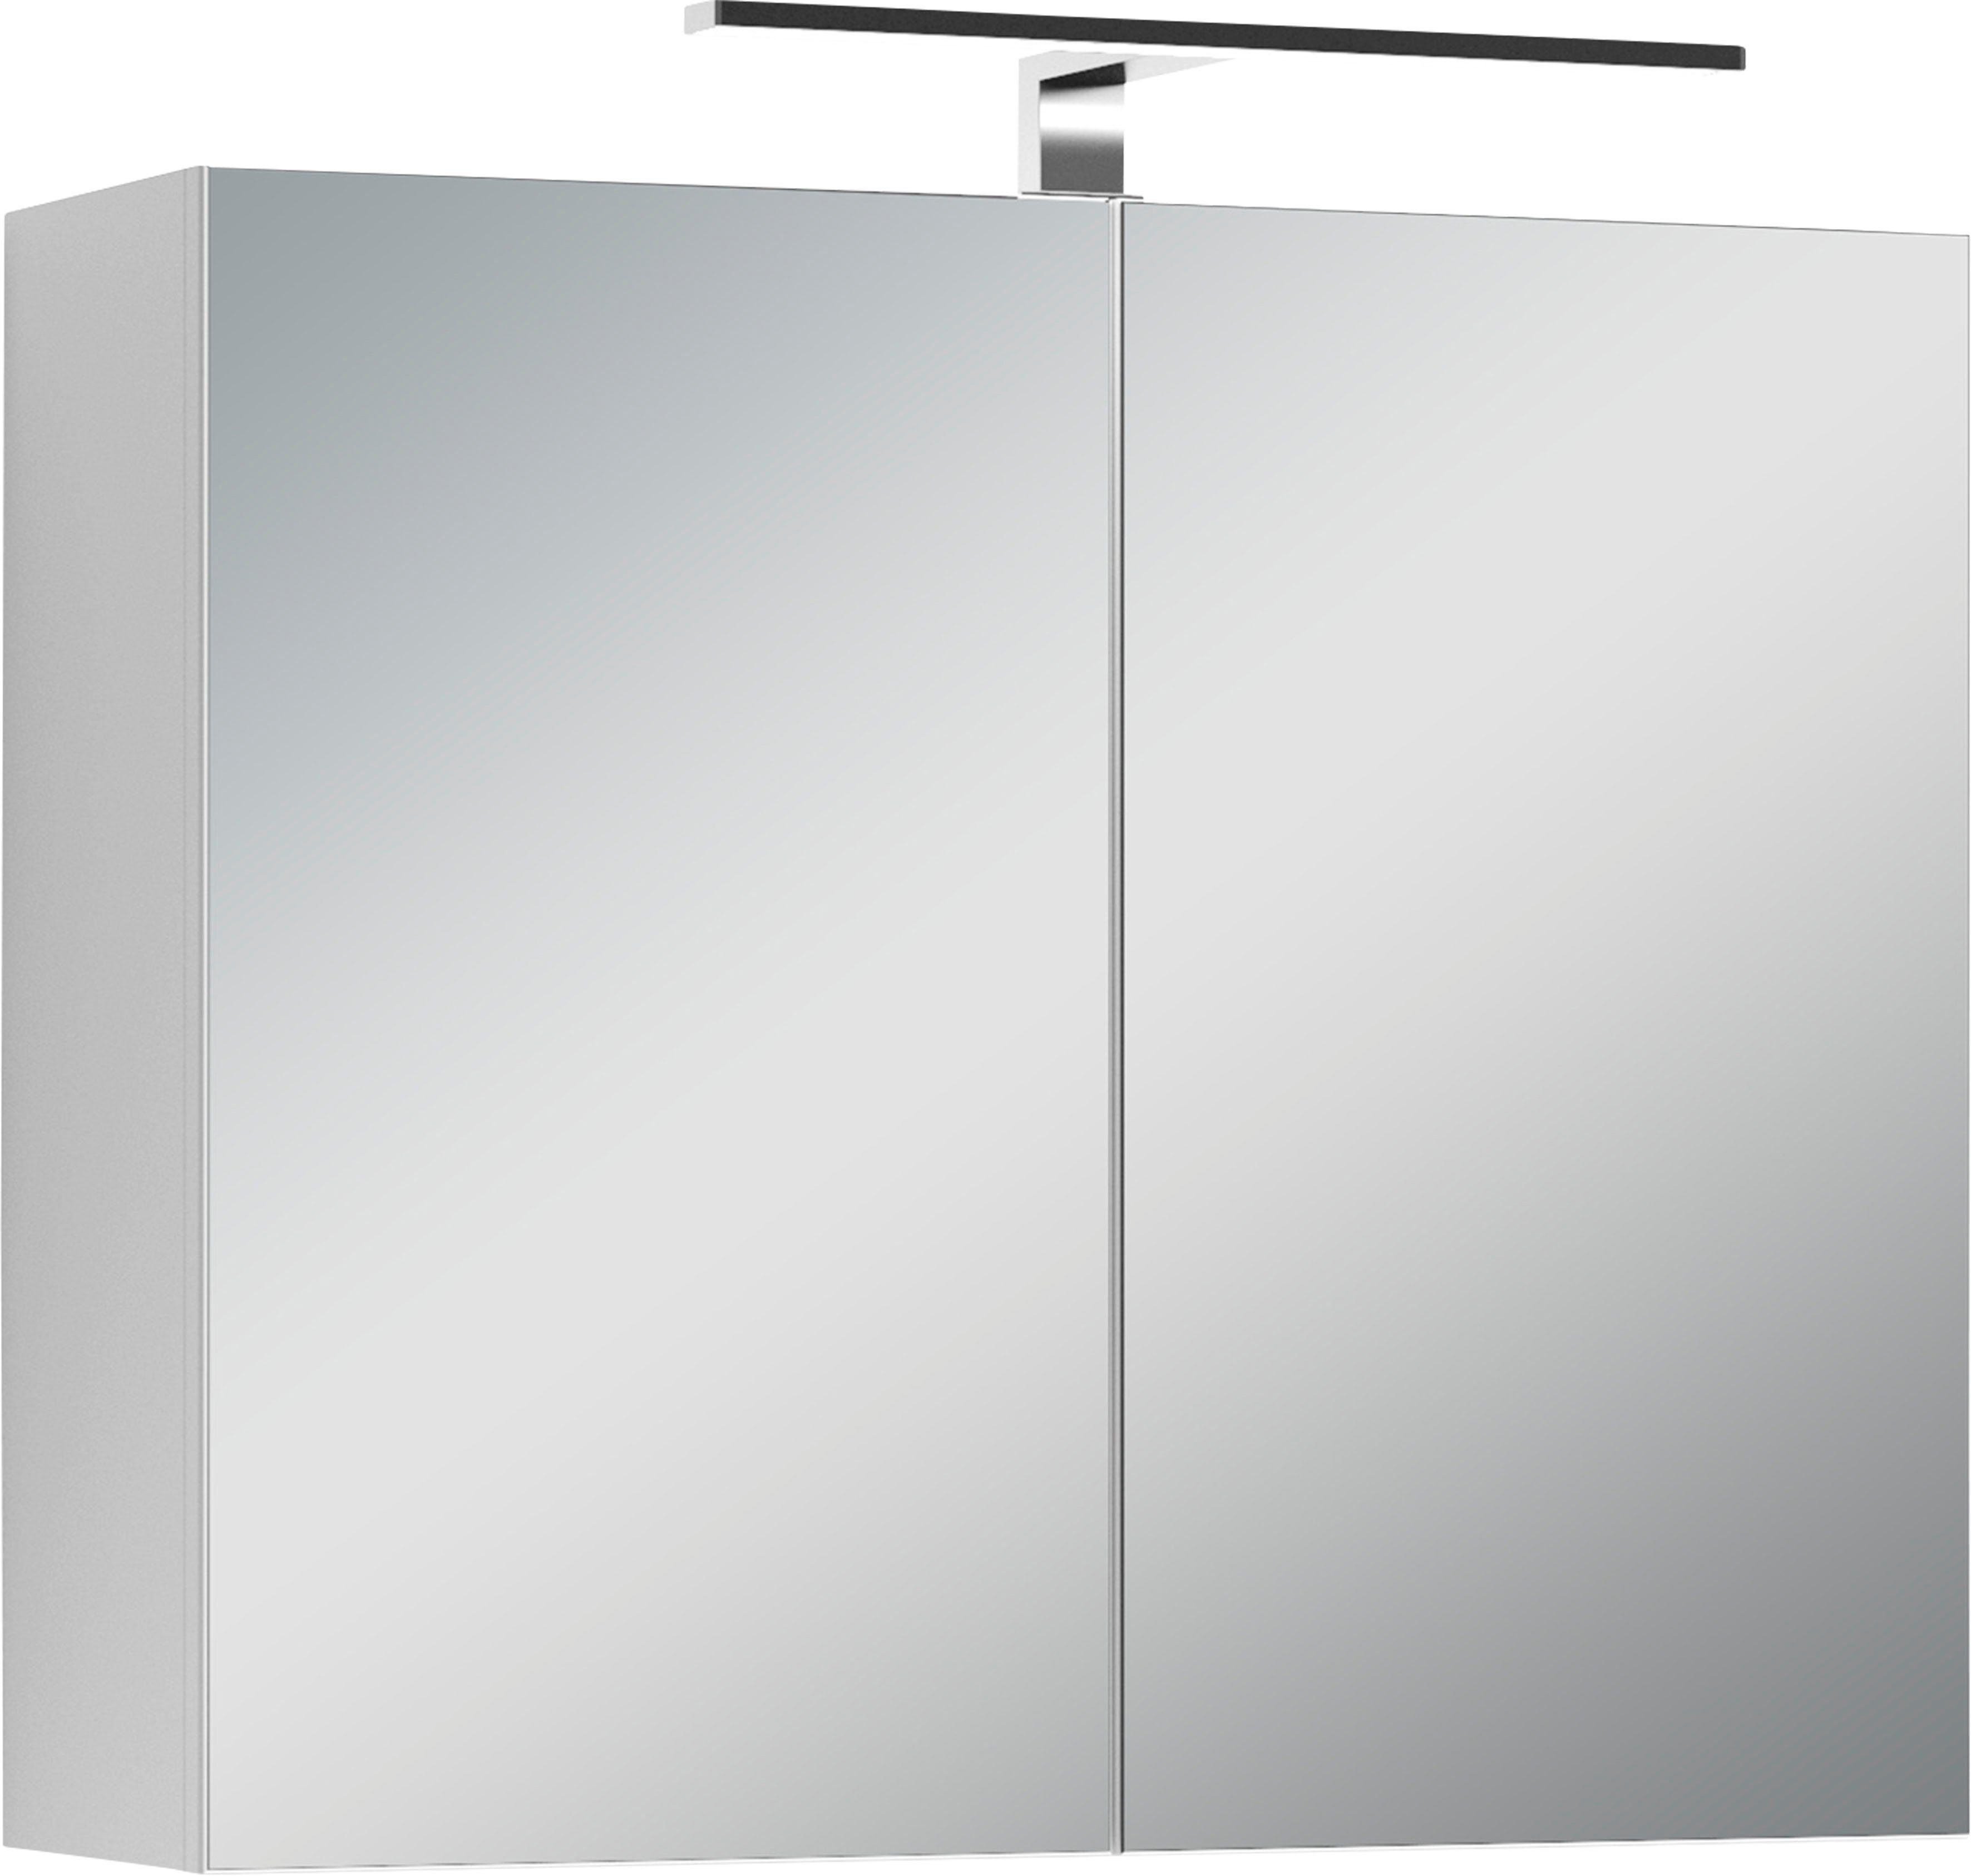 byLIVING Spiegelschrank Spree Breite 70 cm, 2-türig, mit LED Beleuchtung und Schalter-/Steckdosenbox | Spiegelschränke